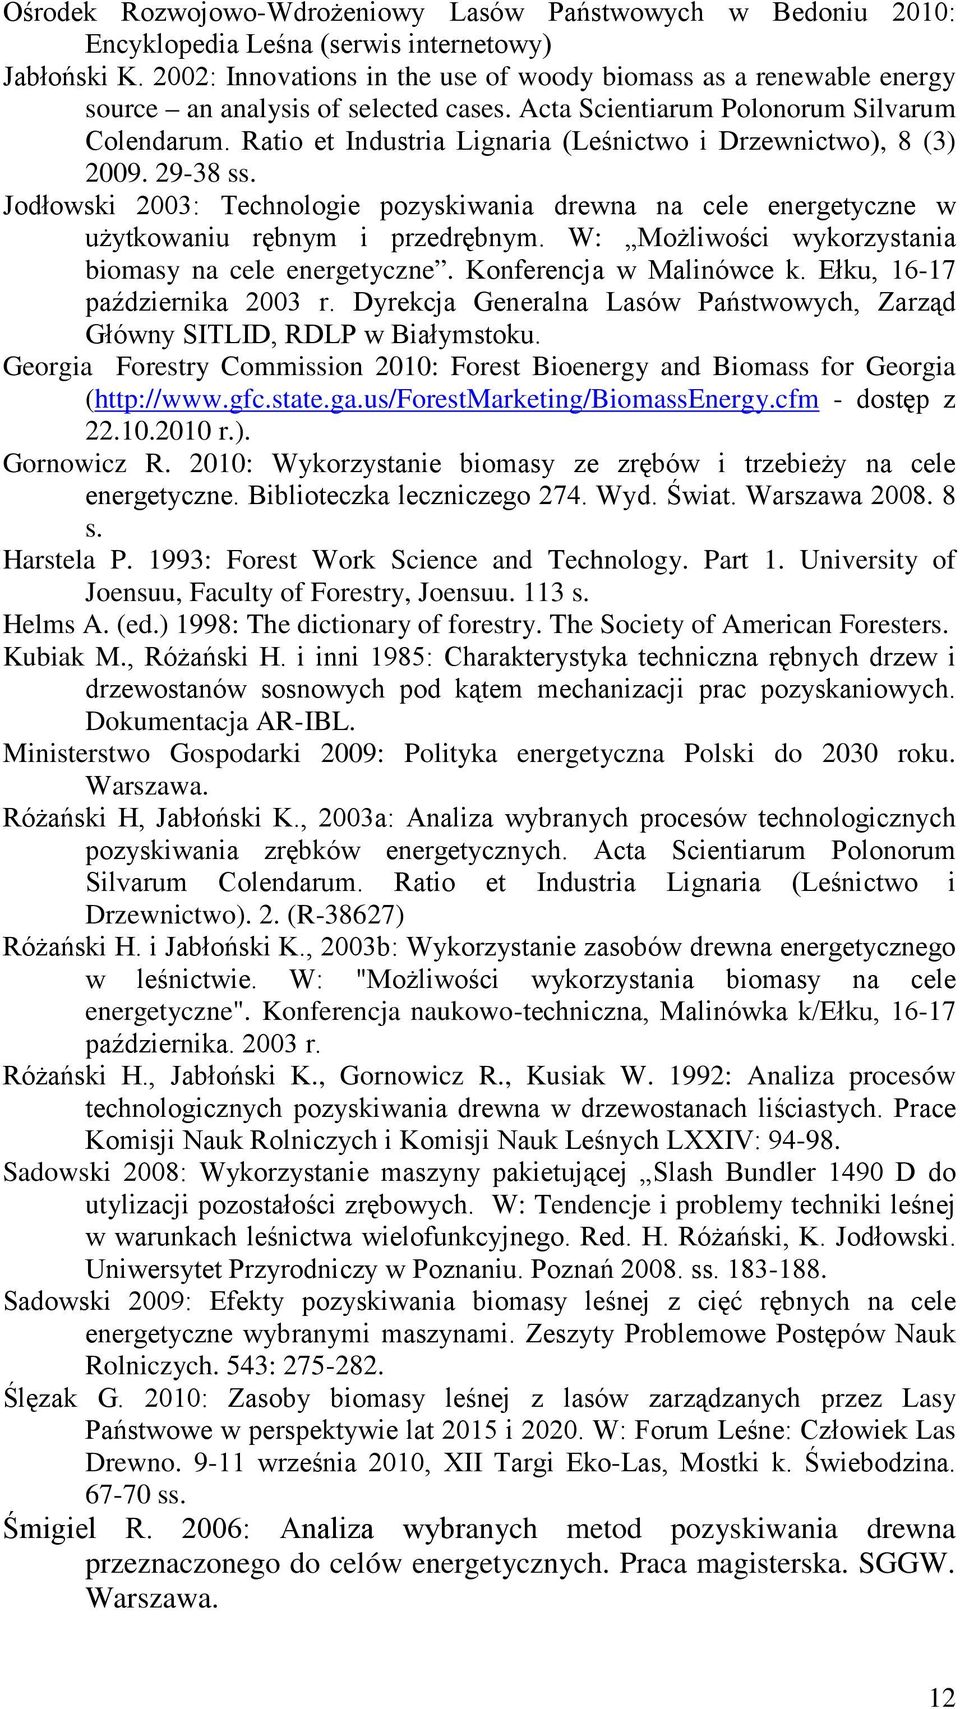 Ratio et Industria Lignaria (Leśnictwo i Drzewnictwo), 8 (3) 2009. 29-38 ss. Jodłowski 2003: Technologie pozyskiwania drewna na cele energetyczne w użytkowaniu rębnym i przedrębnym.